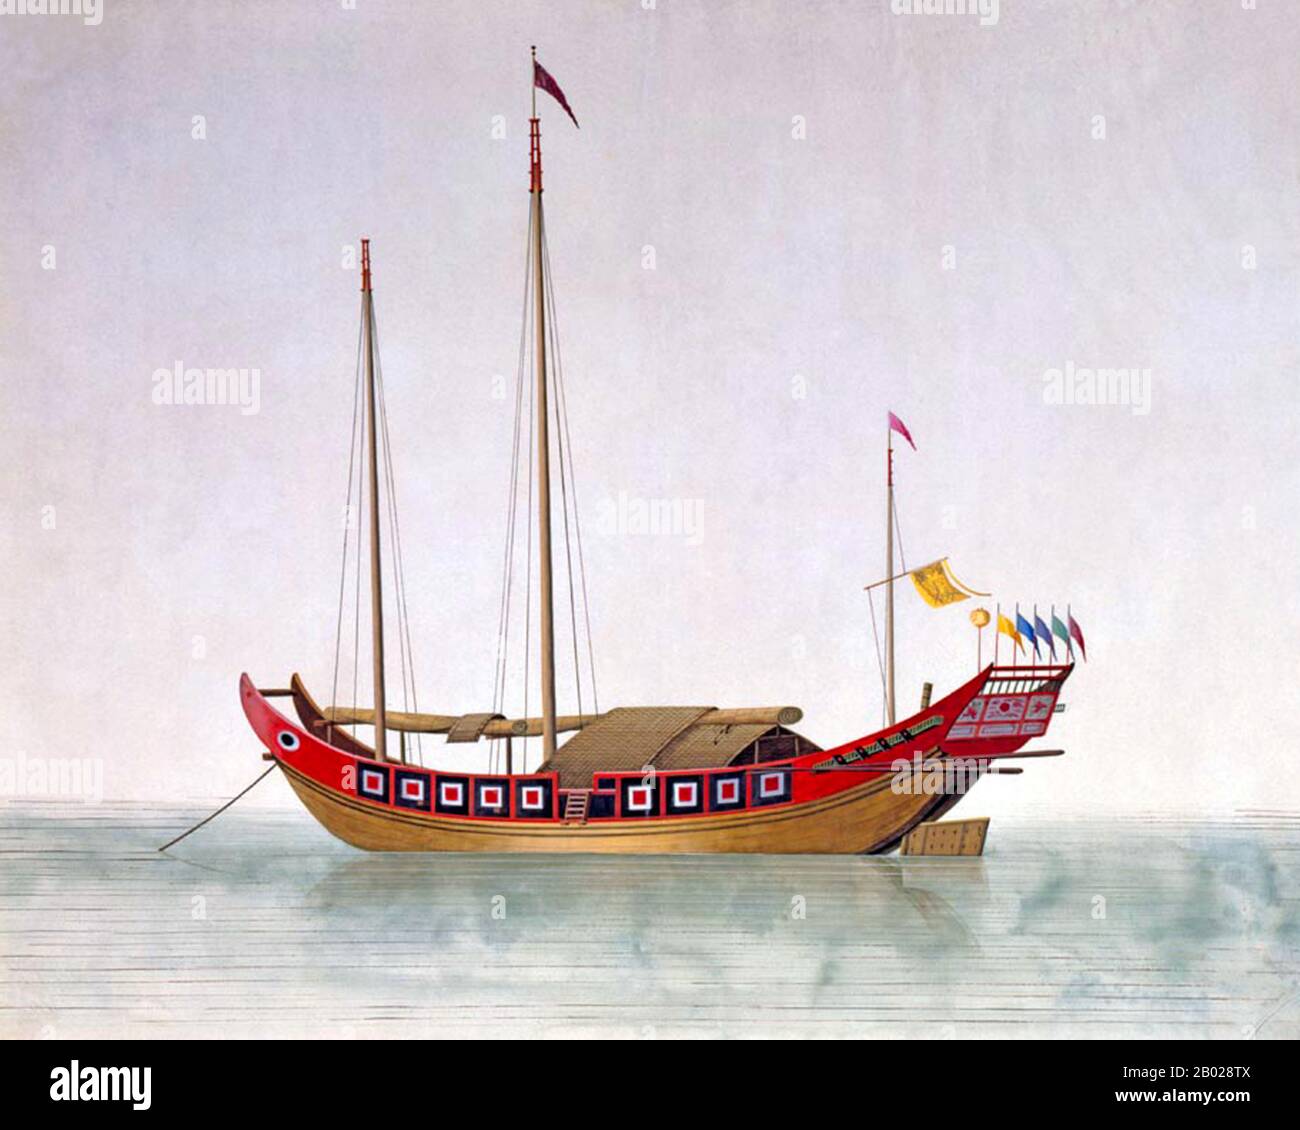 Ein Junk ist ein altes chinesisches Segelschiffdesign, das noch heute verwendet wird. Junks wurden während der Han-Dynastie (206 v. u. z. - 220 u. z.) entwickelt und bereits im 2. Jahrhundert als Seeschiffe eingesetzt. Sie entwickelten sich in den späteren Dynastien und wurden in ganz Asien für umfangreiche Ozeanfahrten verwendet. Sie wurden in ganz Südostasien und Indien, aber vor allem in China, vielleicht am berühmtesten in Hongkong, gefunden und in geringerer Zahl noch gefunden. Stockfoto